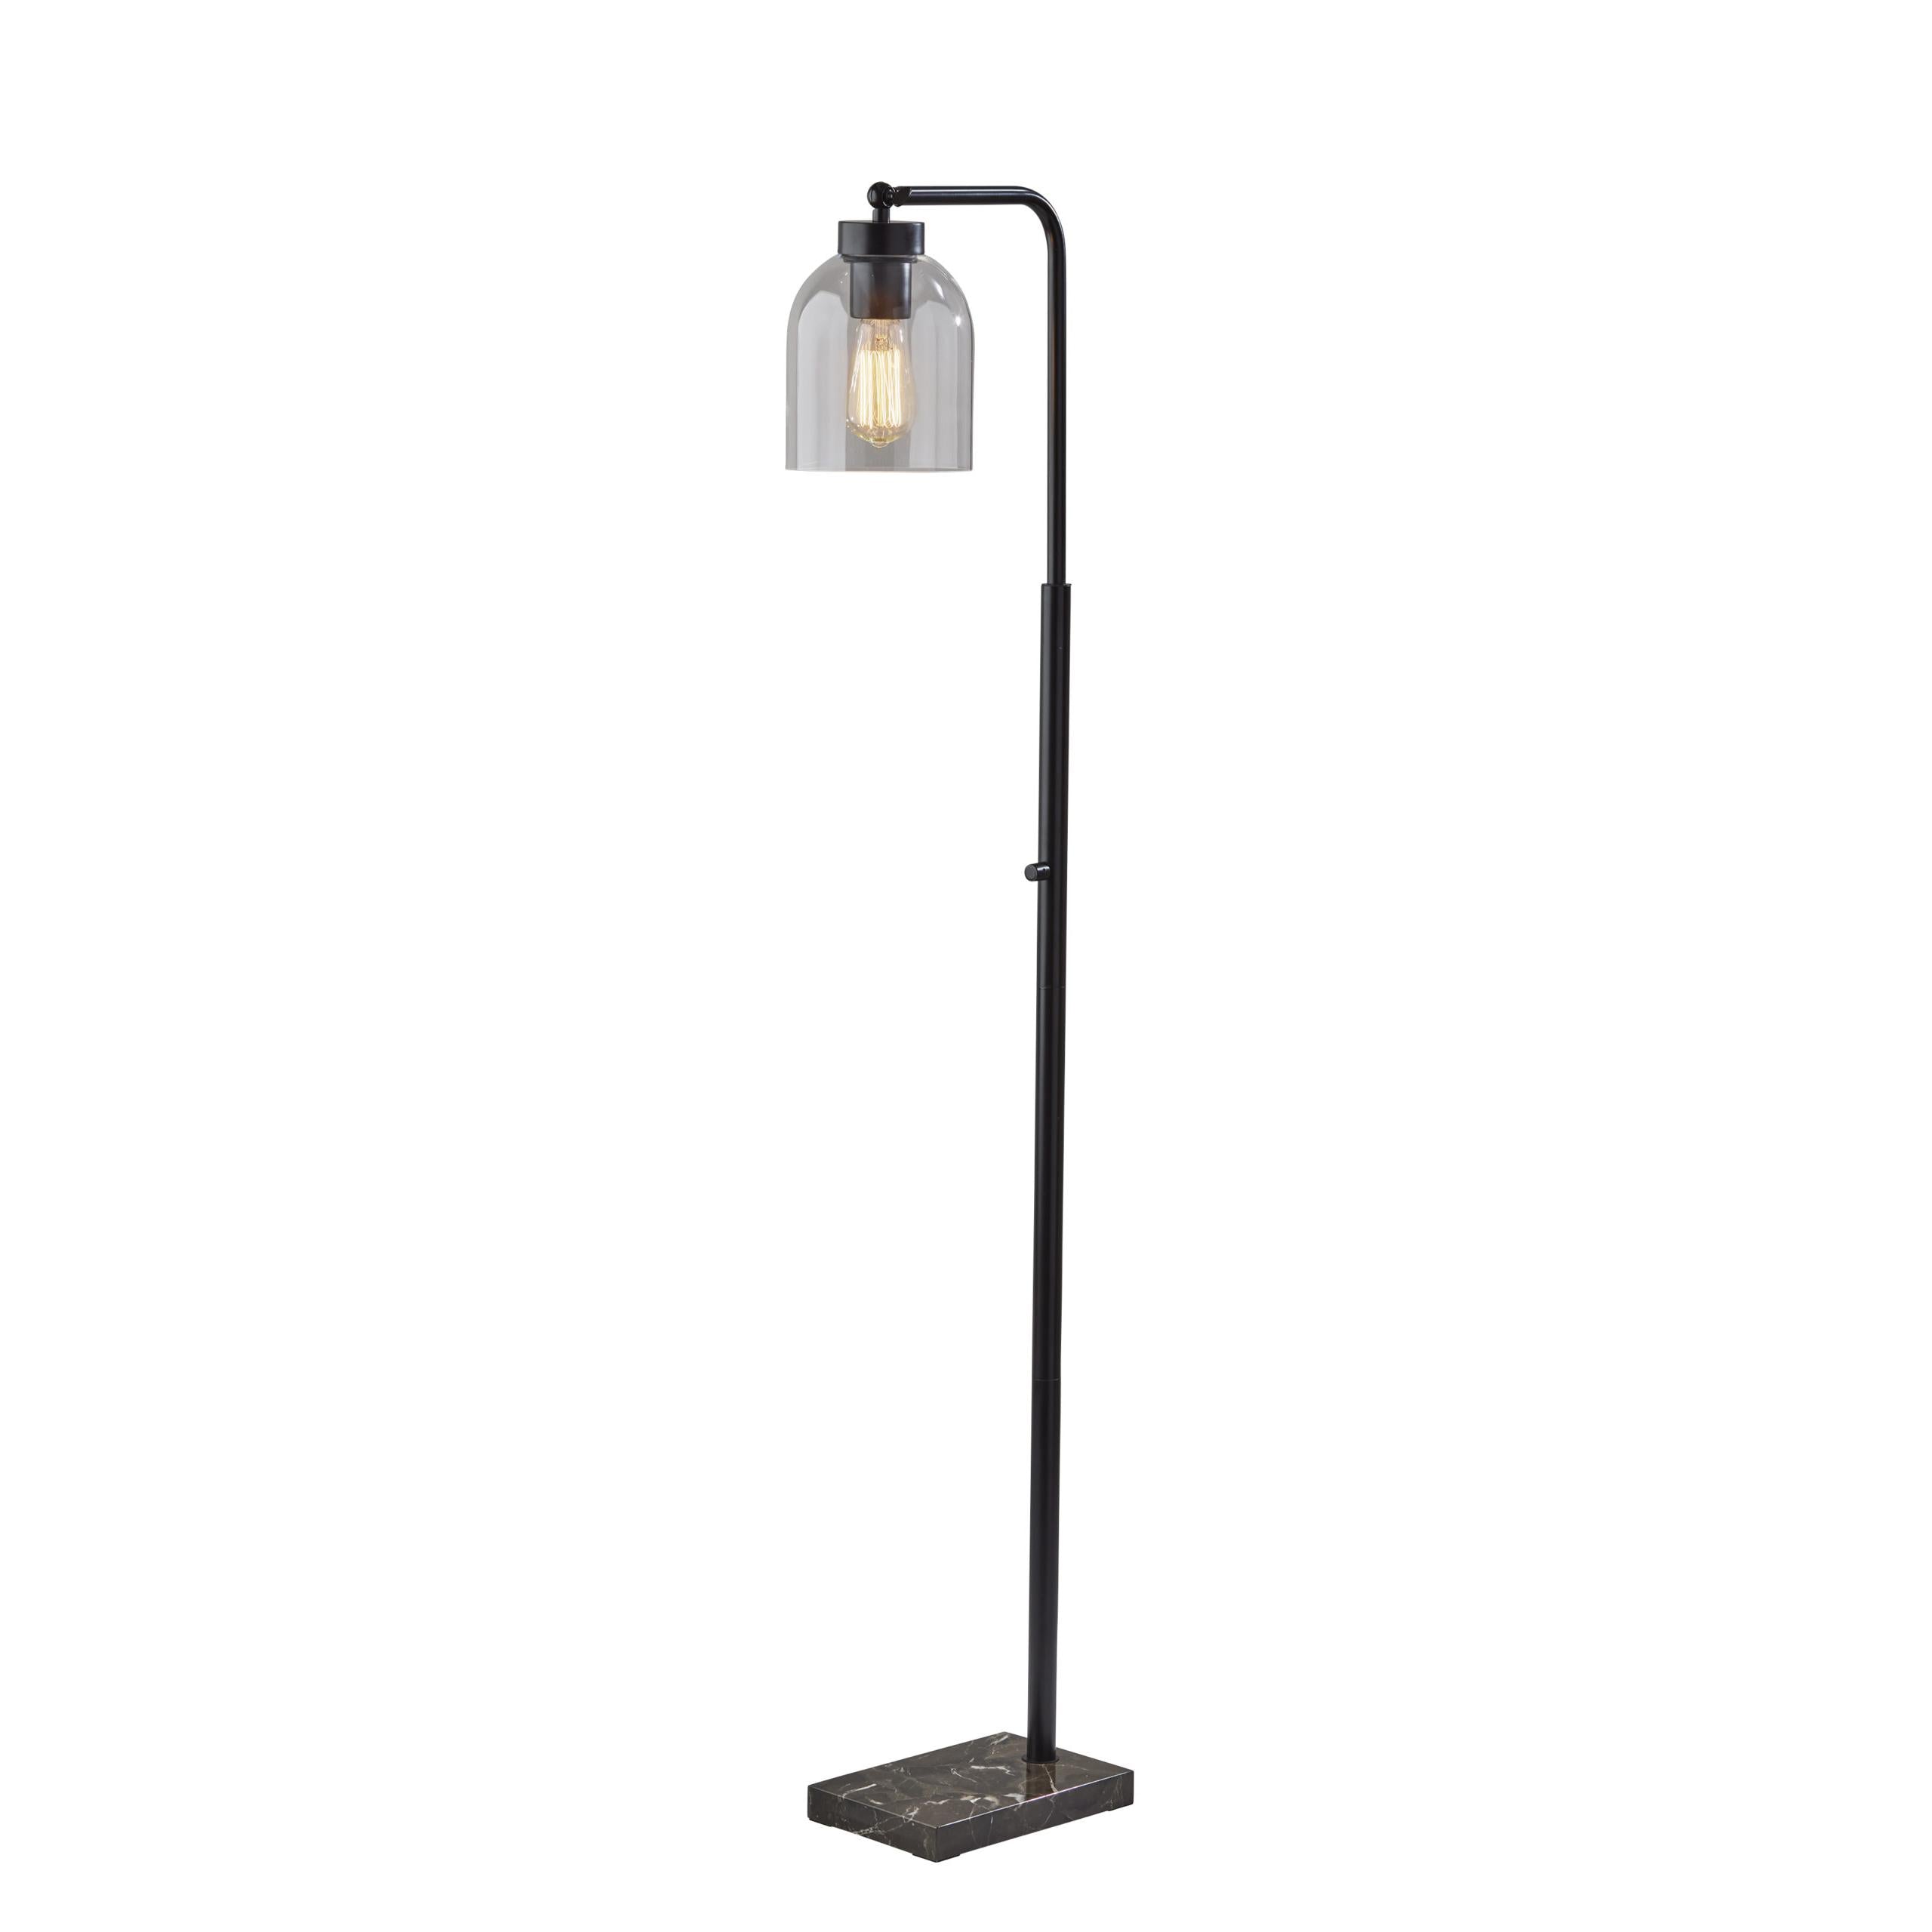 BRISTOL Floor lamp Black - 4289-01 | ADESSO